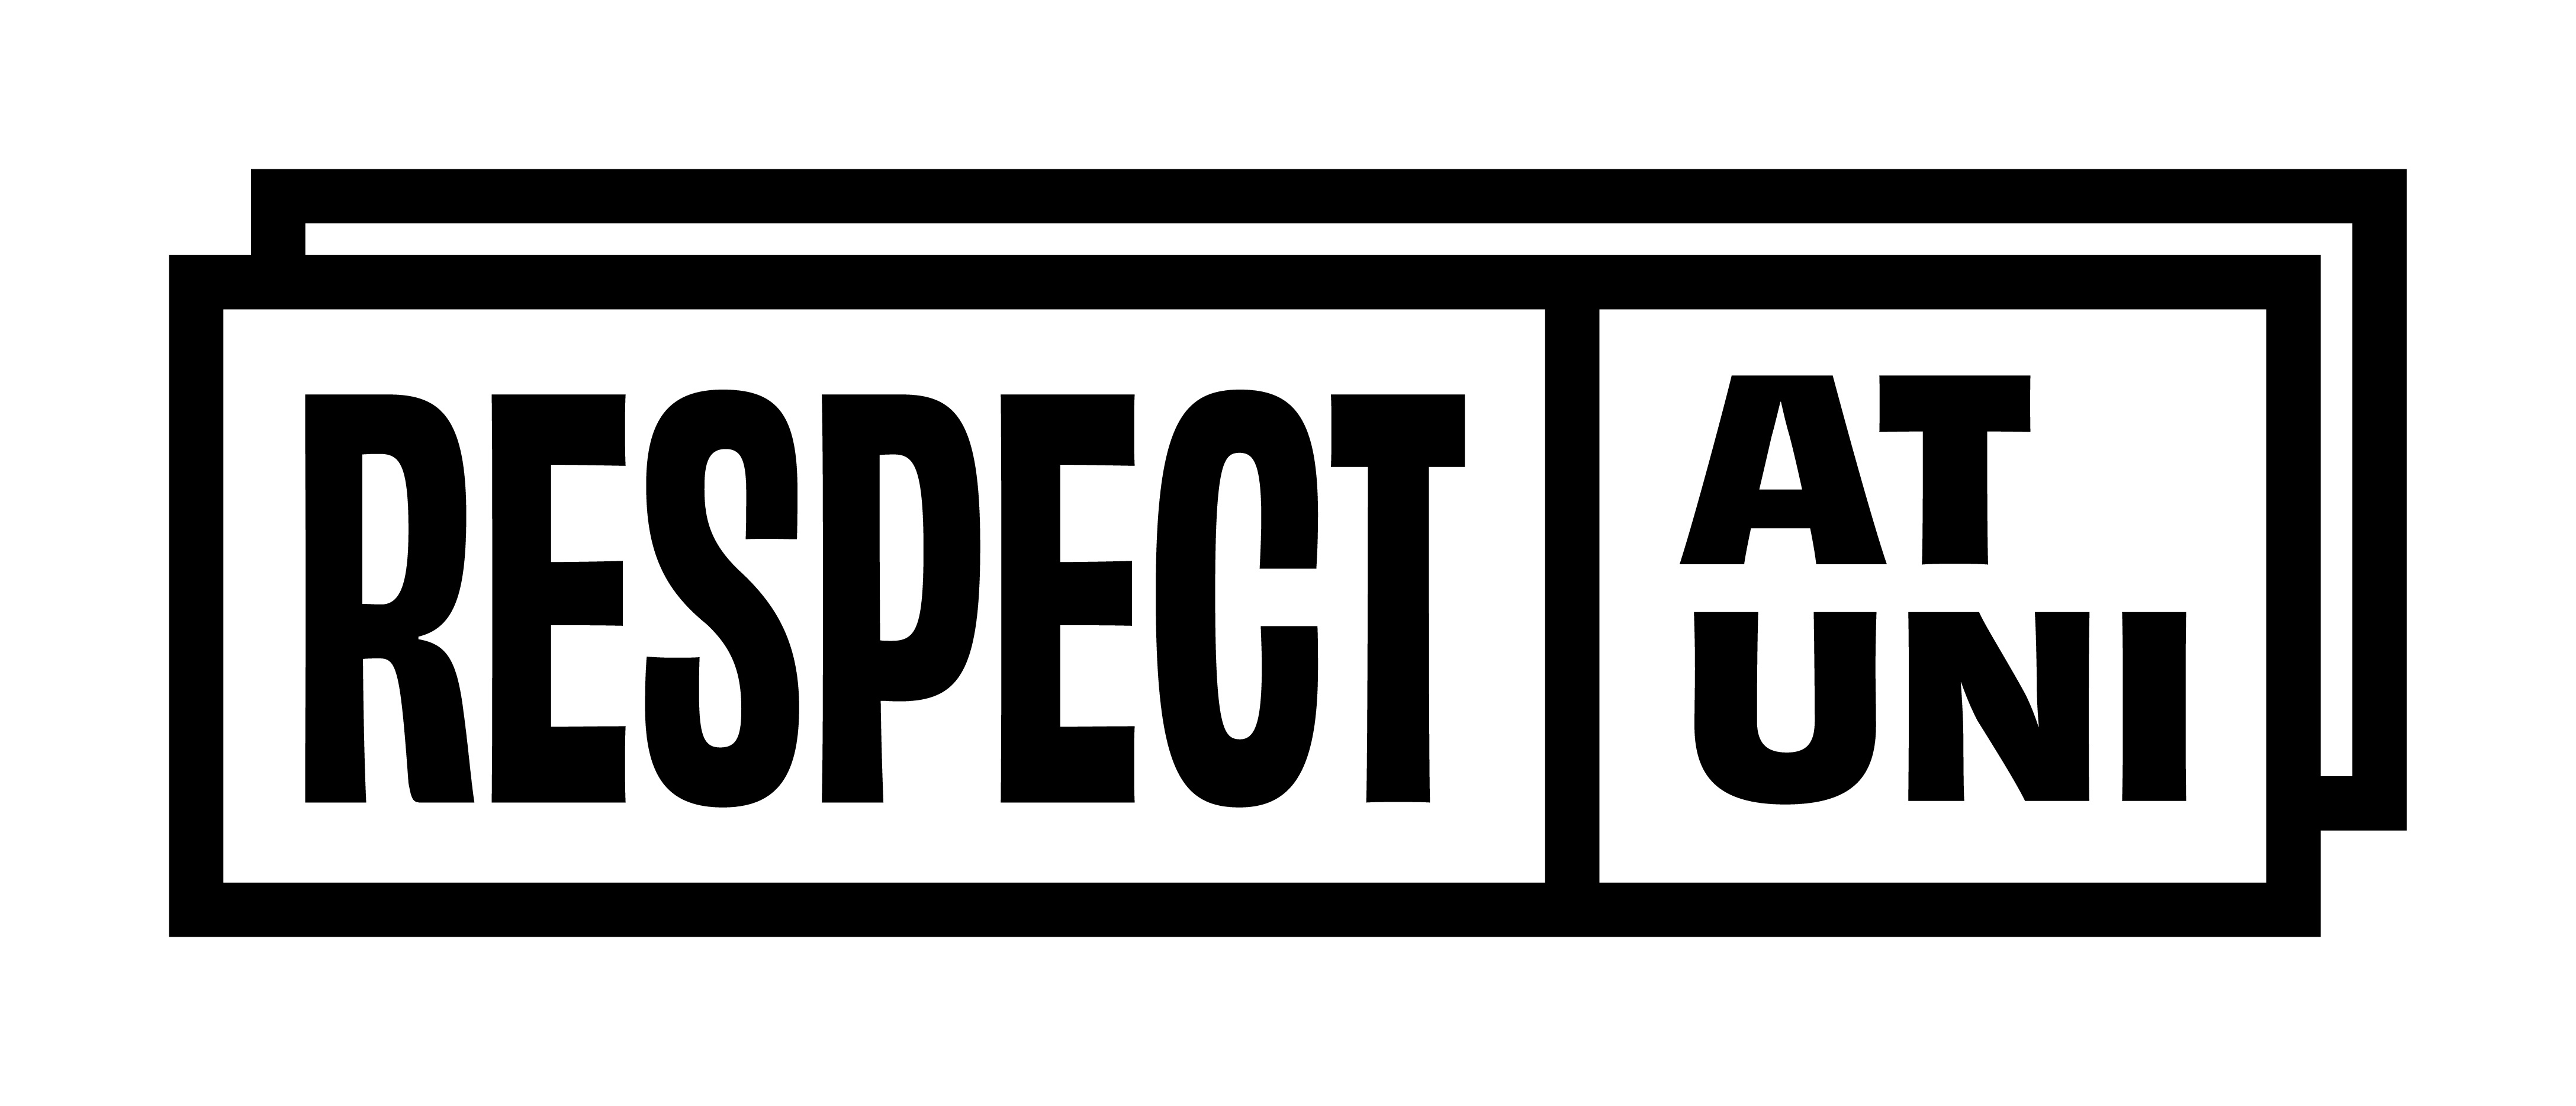 Respect week intext image 